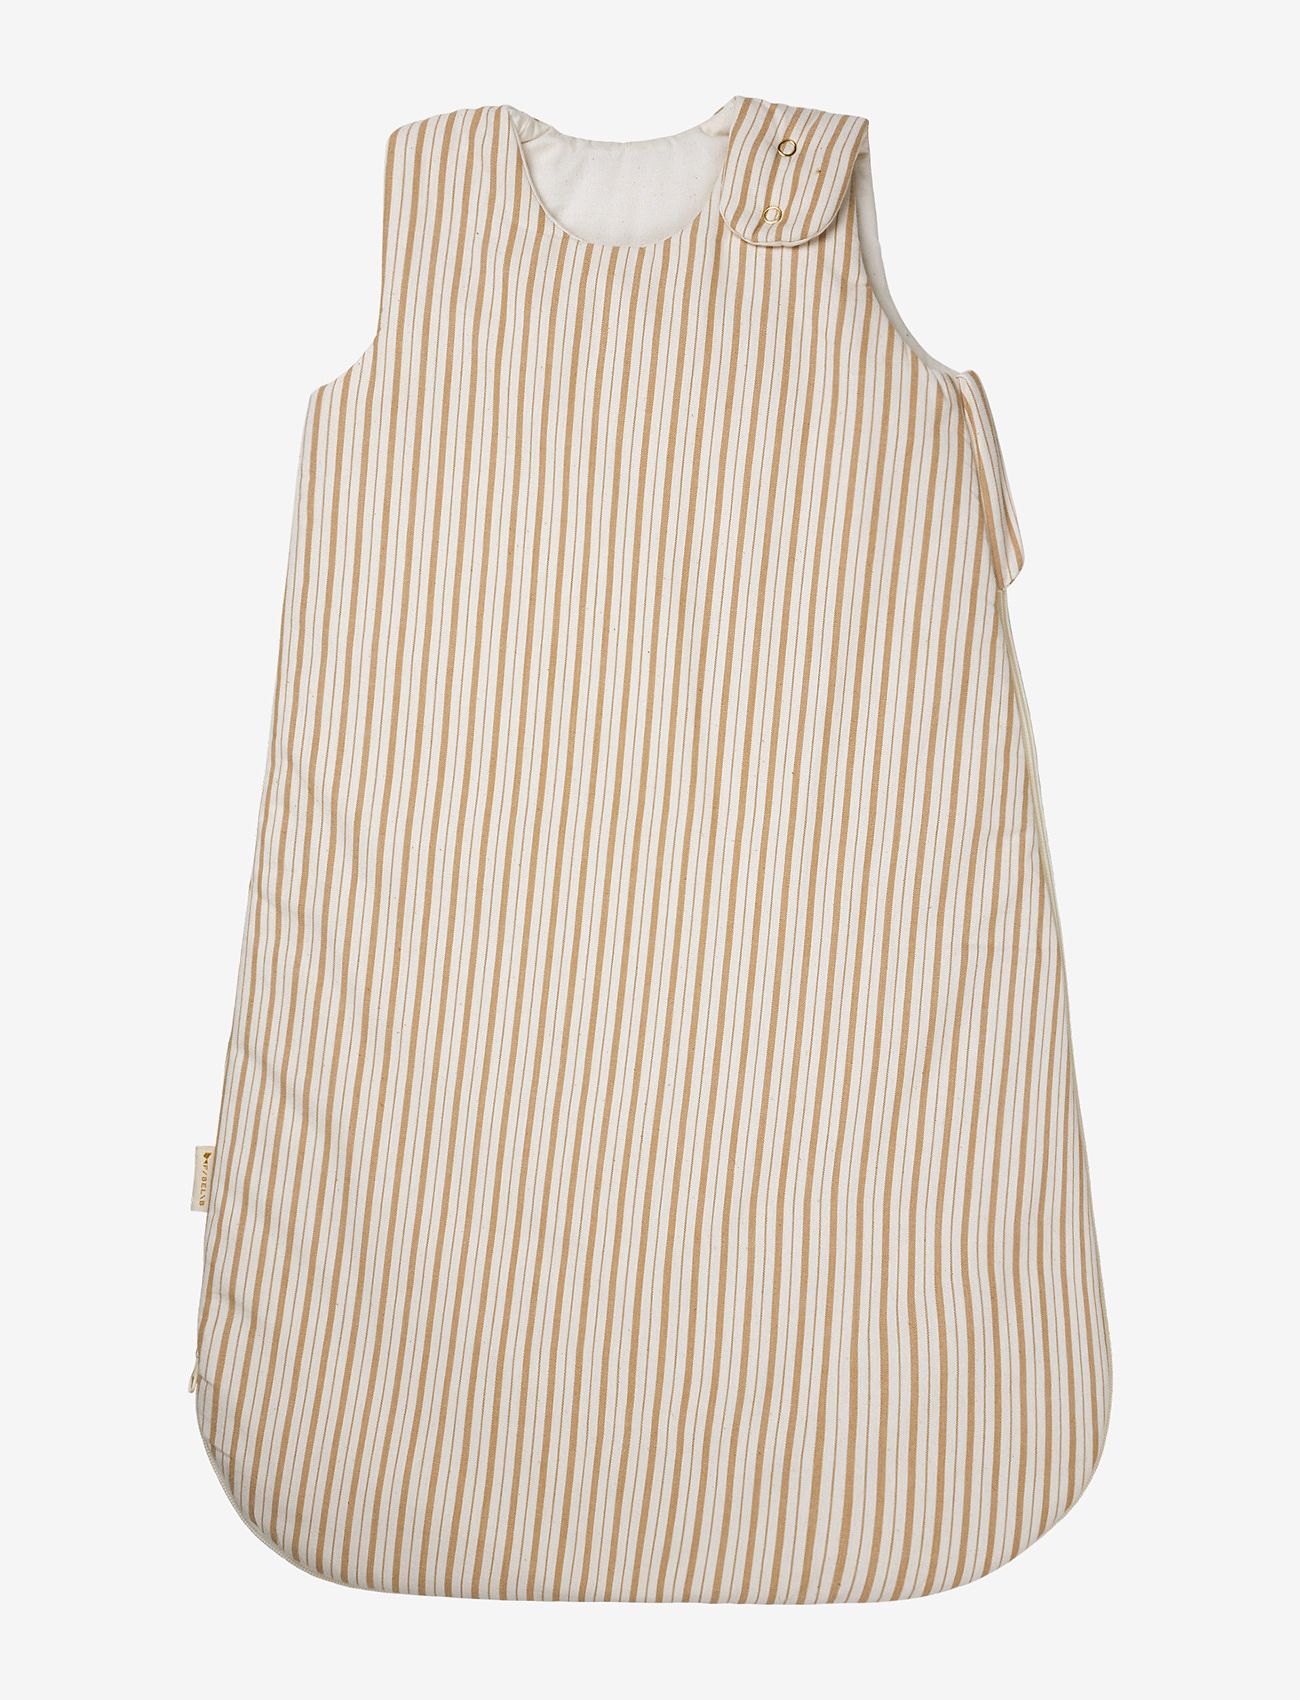 Fabelab - Sleeping bag - Caramel Stripes 0-6M - kinder - natural - 0